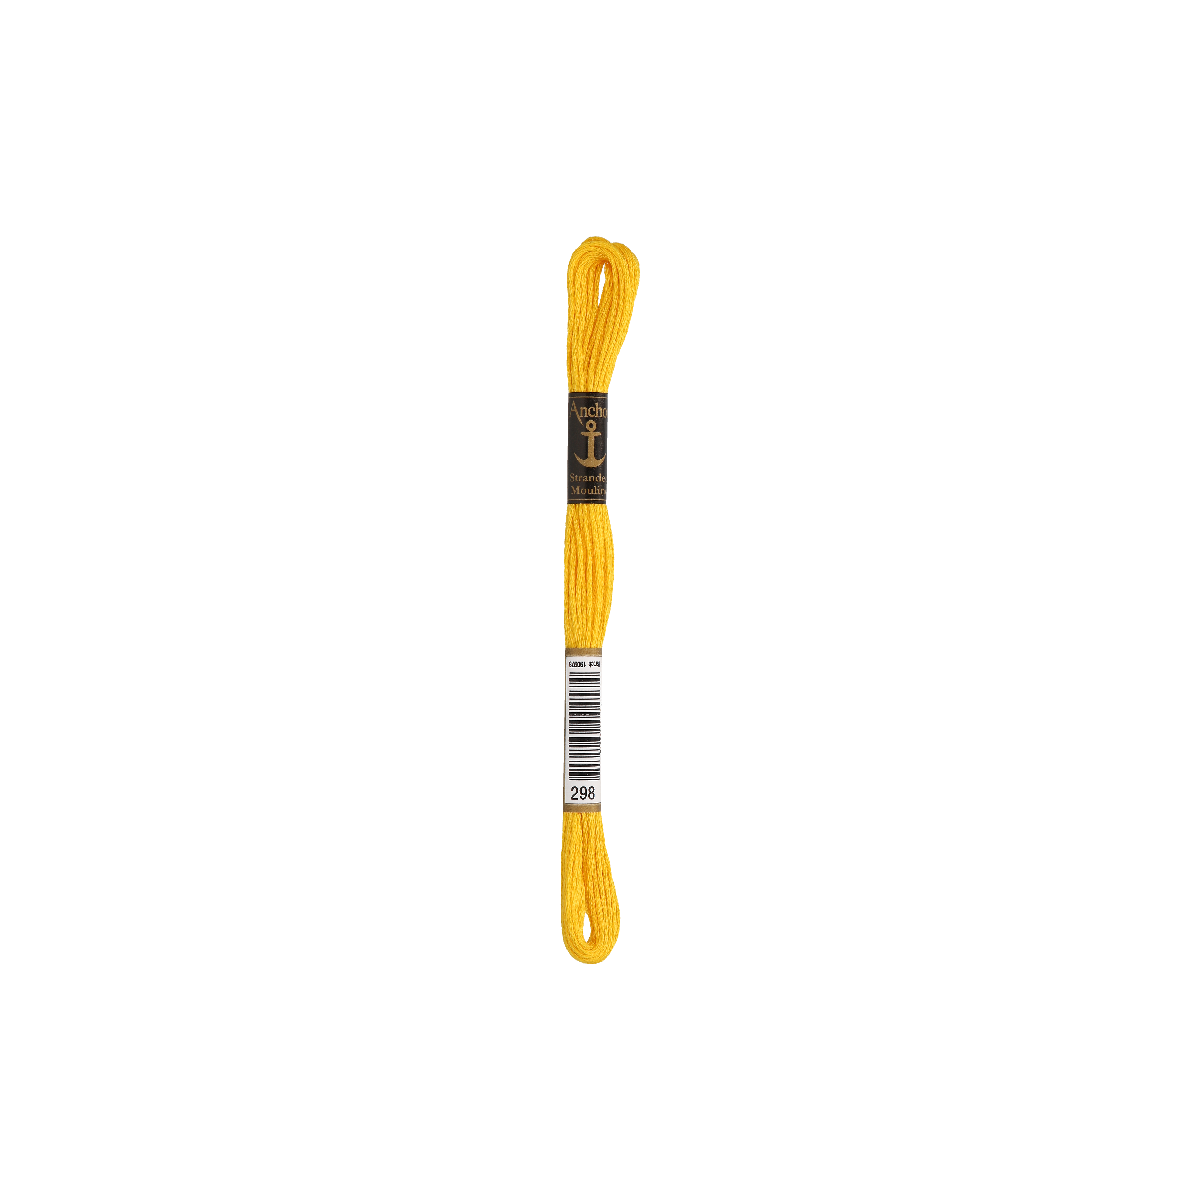 Anchor Sticktwist 8m, giallo sole, cotone, colore 298, 6...